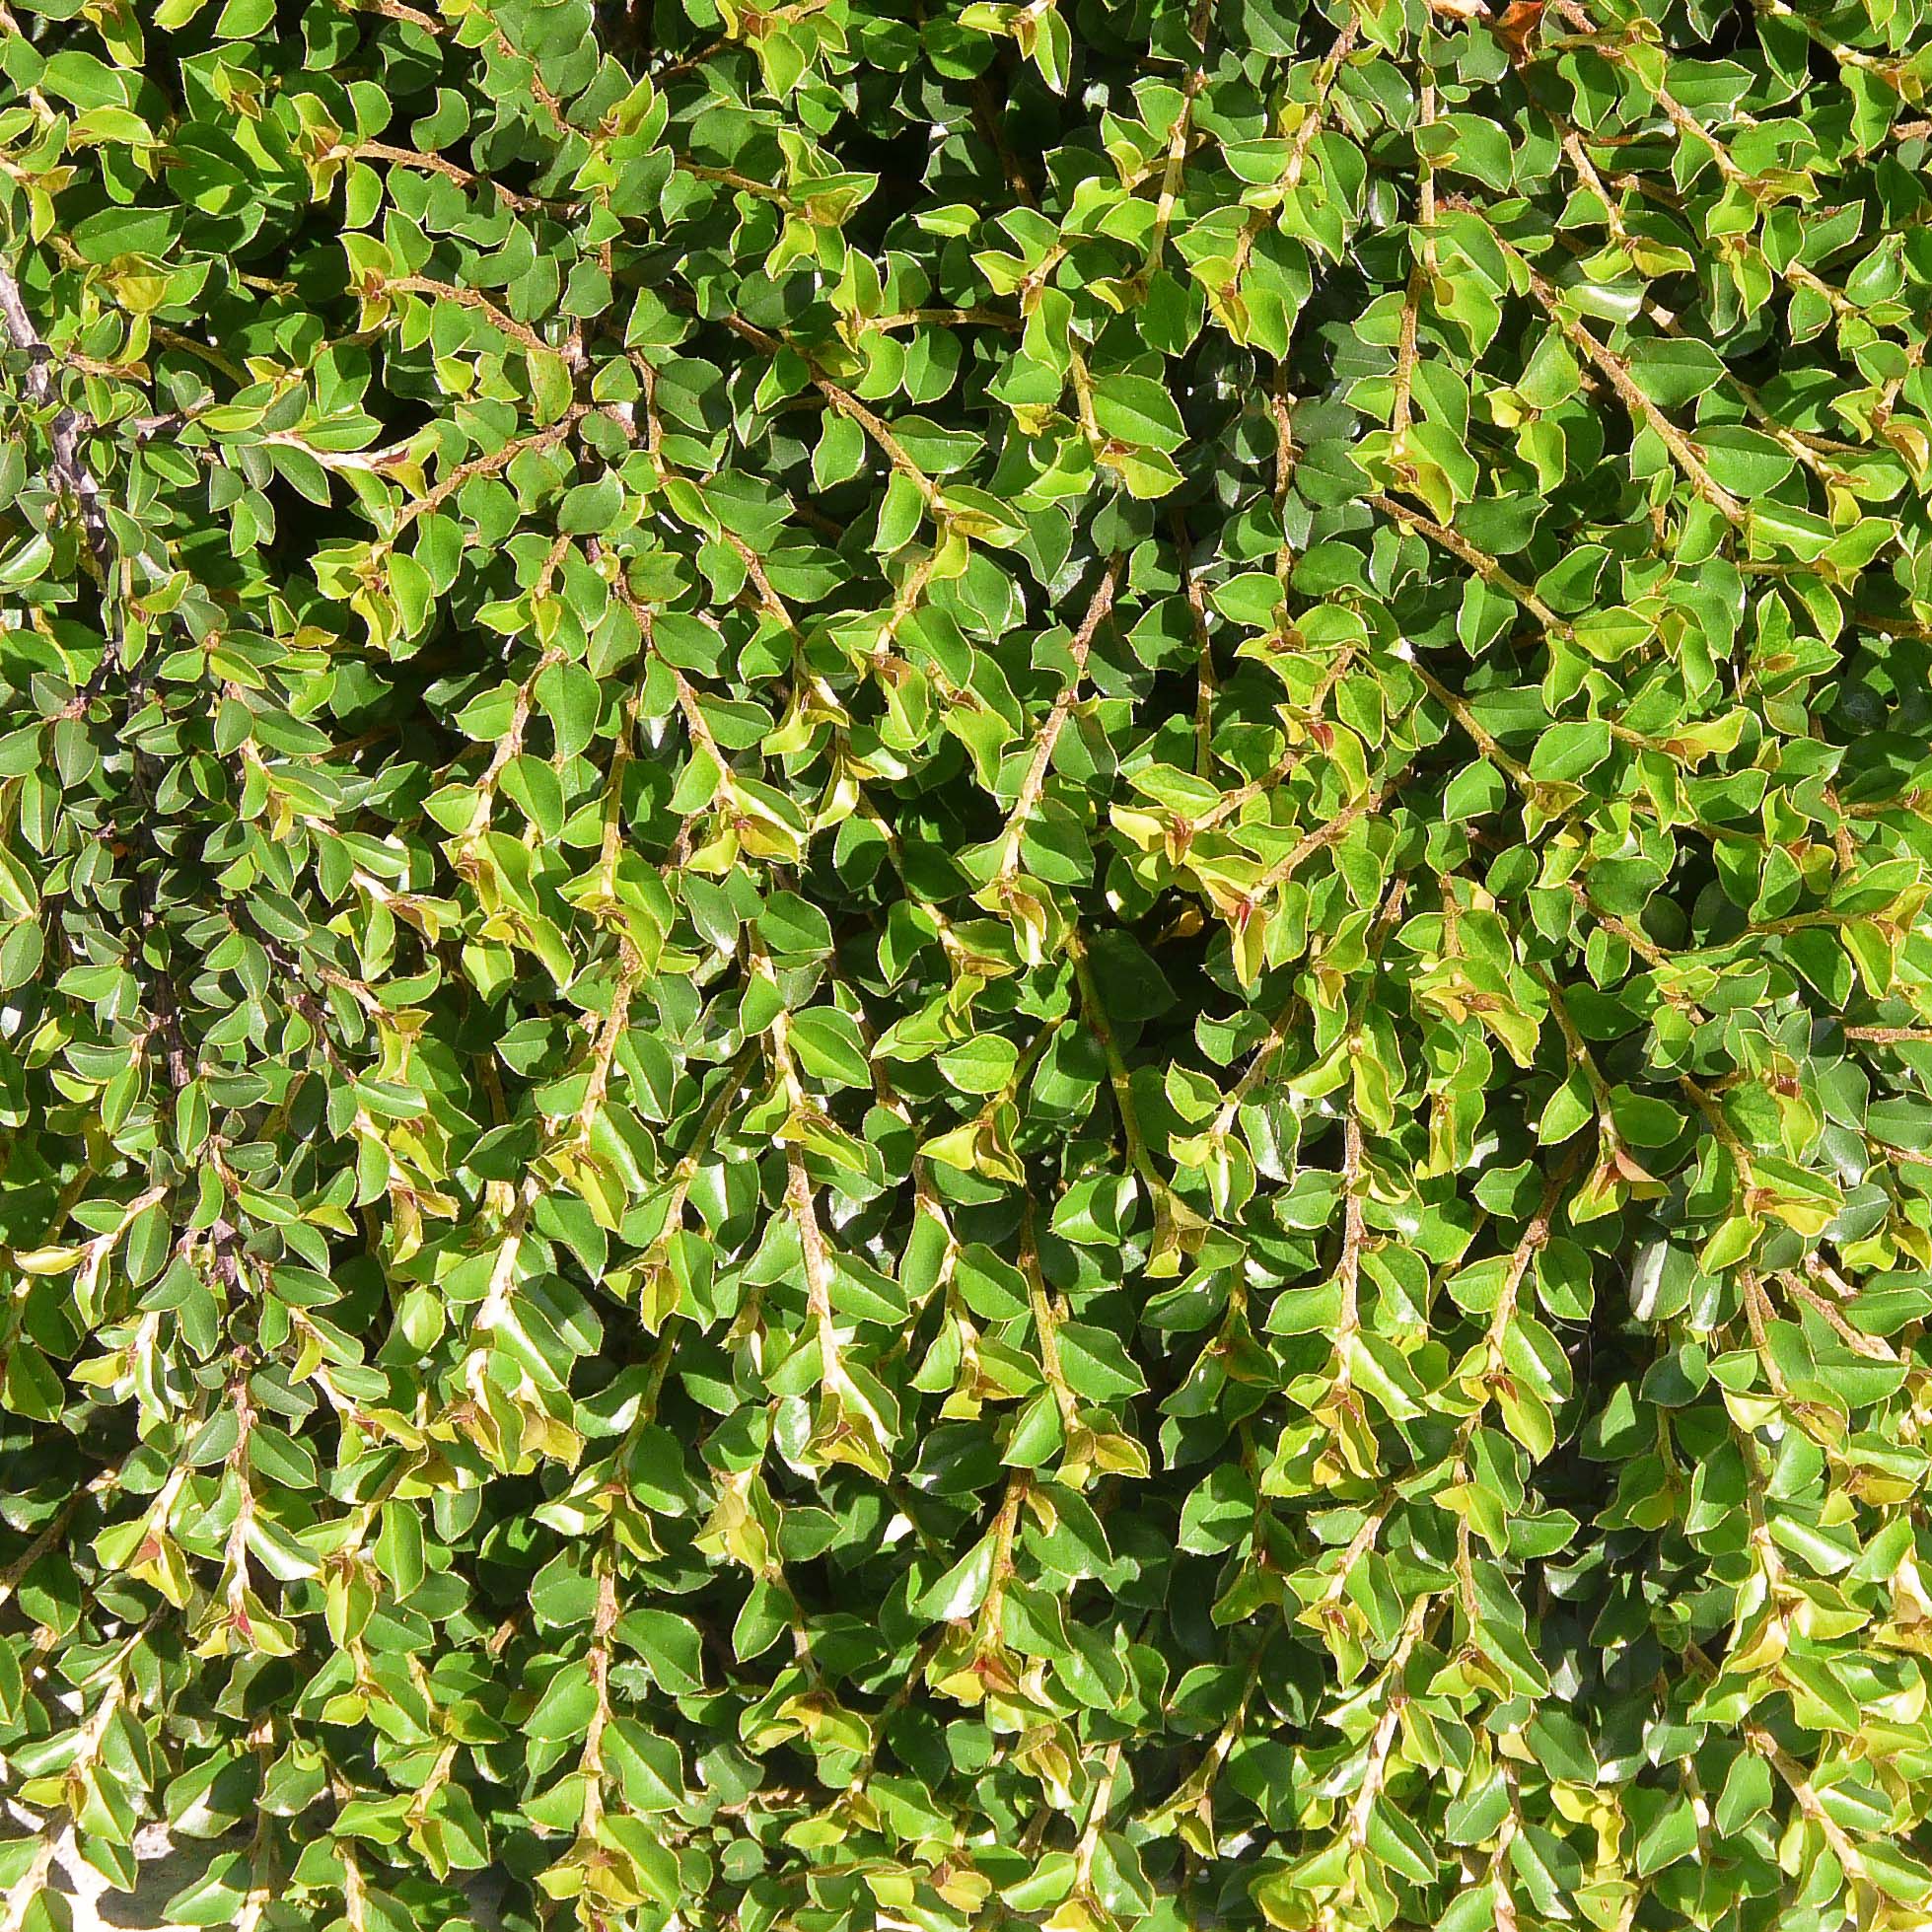 Cotoneaster adpressus - Cotonéaster rampant.